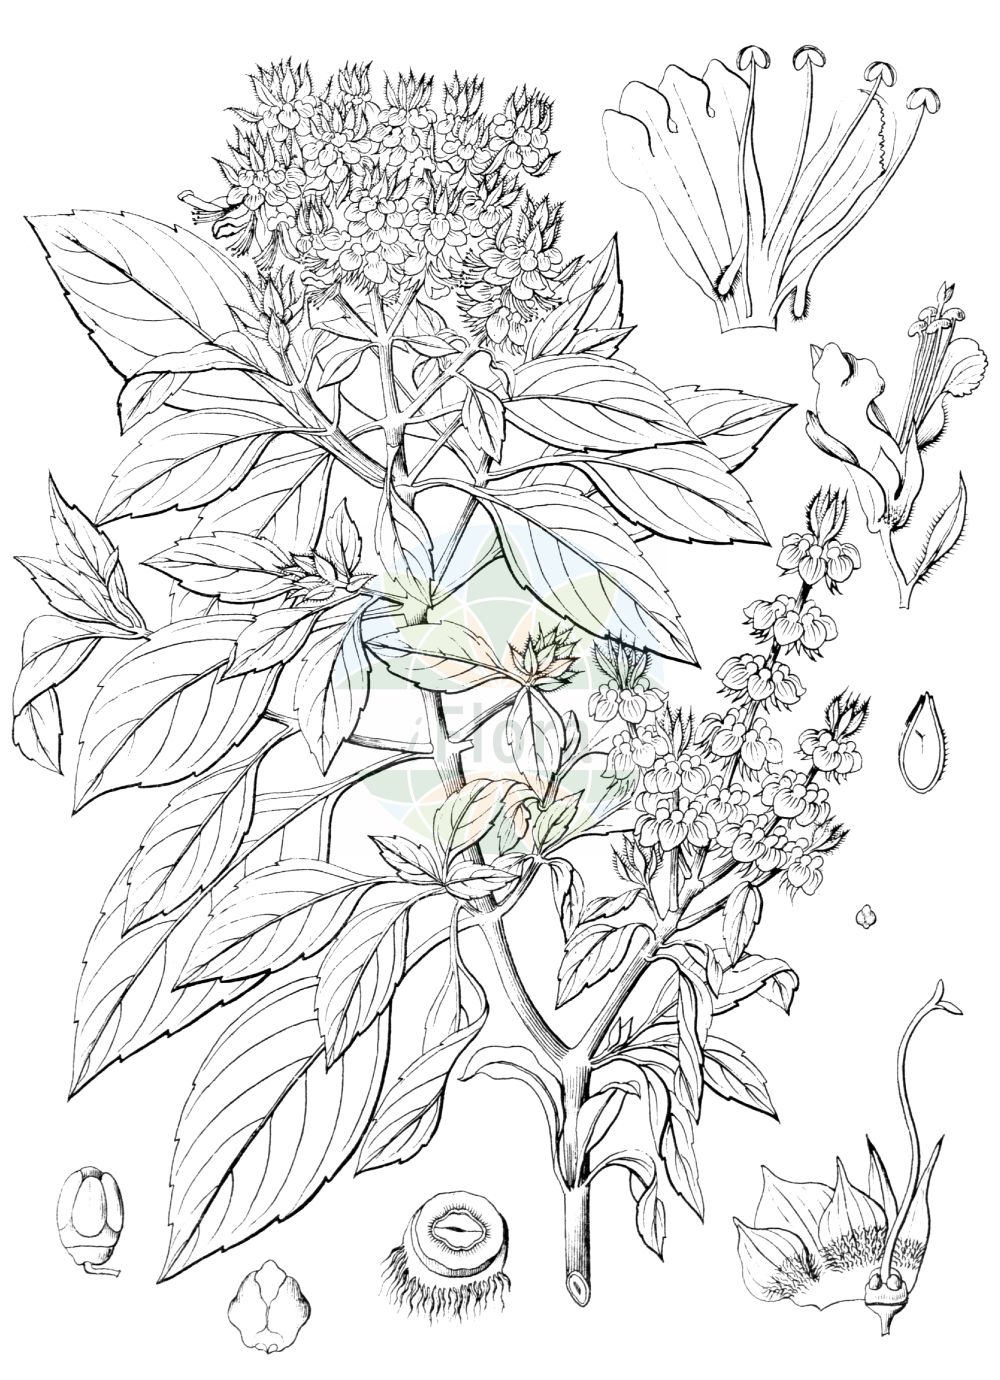 Historische Abbildung von Ocimum basilicum. Das Bild zeigt Blatt, Bluete, Frucht und Same. ---- Historical Drawing of Ocimum basilicum. The image is showing leaf, flower, fruit and seed.(Ocimum basilicum,Ocimum album,Ocimum anisatum,Ocimum barrelieri,Ocimum basilicum,Ocimum bullatum,Ocimum caryophyllatum,Ocimum chevalieri,Ocimum ciliare,Ocimum ciliatum,Ocimum citrodorum,Ocimum cochleatum,Ocimum dentatum,Ocimum hispidum,Ocimum integerrimum,Ocimum lanceolatum,Ocimum laxum,Ocimum majus,Ocimum medium,Ocimum minus,Ocimum nigrum,Ocimum odorum,Ocimum scabrum,Ocimum simile,Ocimum thyrsiflorum,Ocimum urticifolium,Plectranthus barrelieri,Ocimum,Lamiaceae,Lippenblütengewächse,Nettle family,Blatt,Bluete,Frucht,Same,leaf,flower,fruit,seed,Wight (1840-1850))